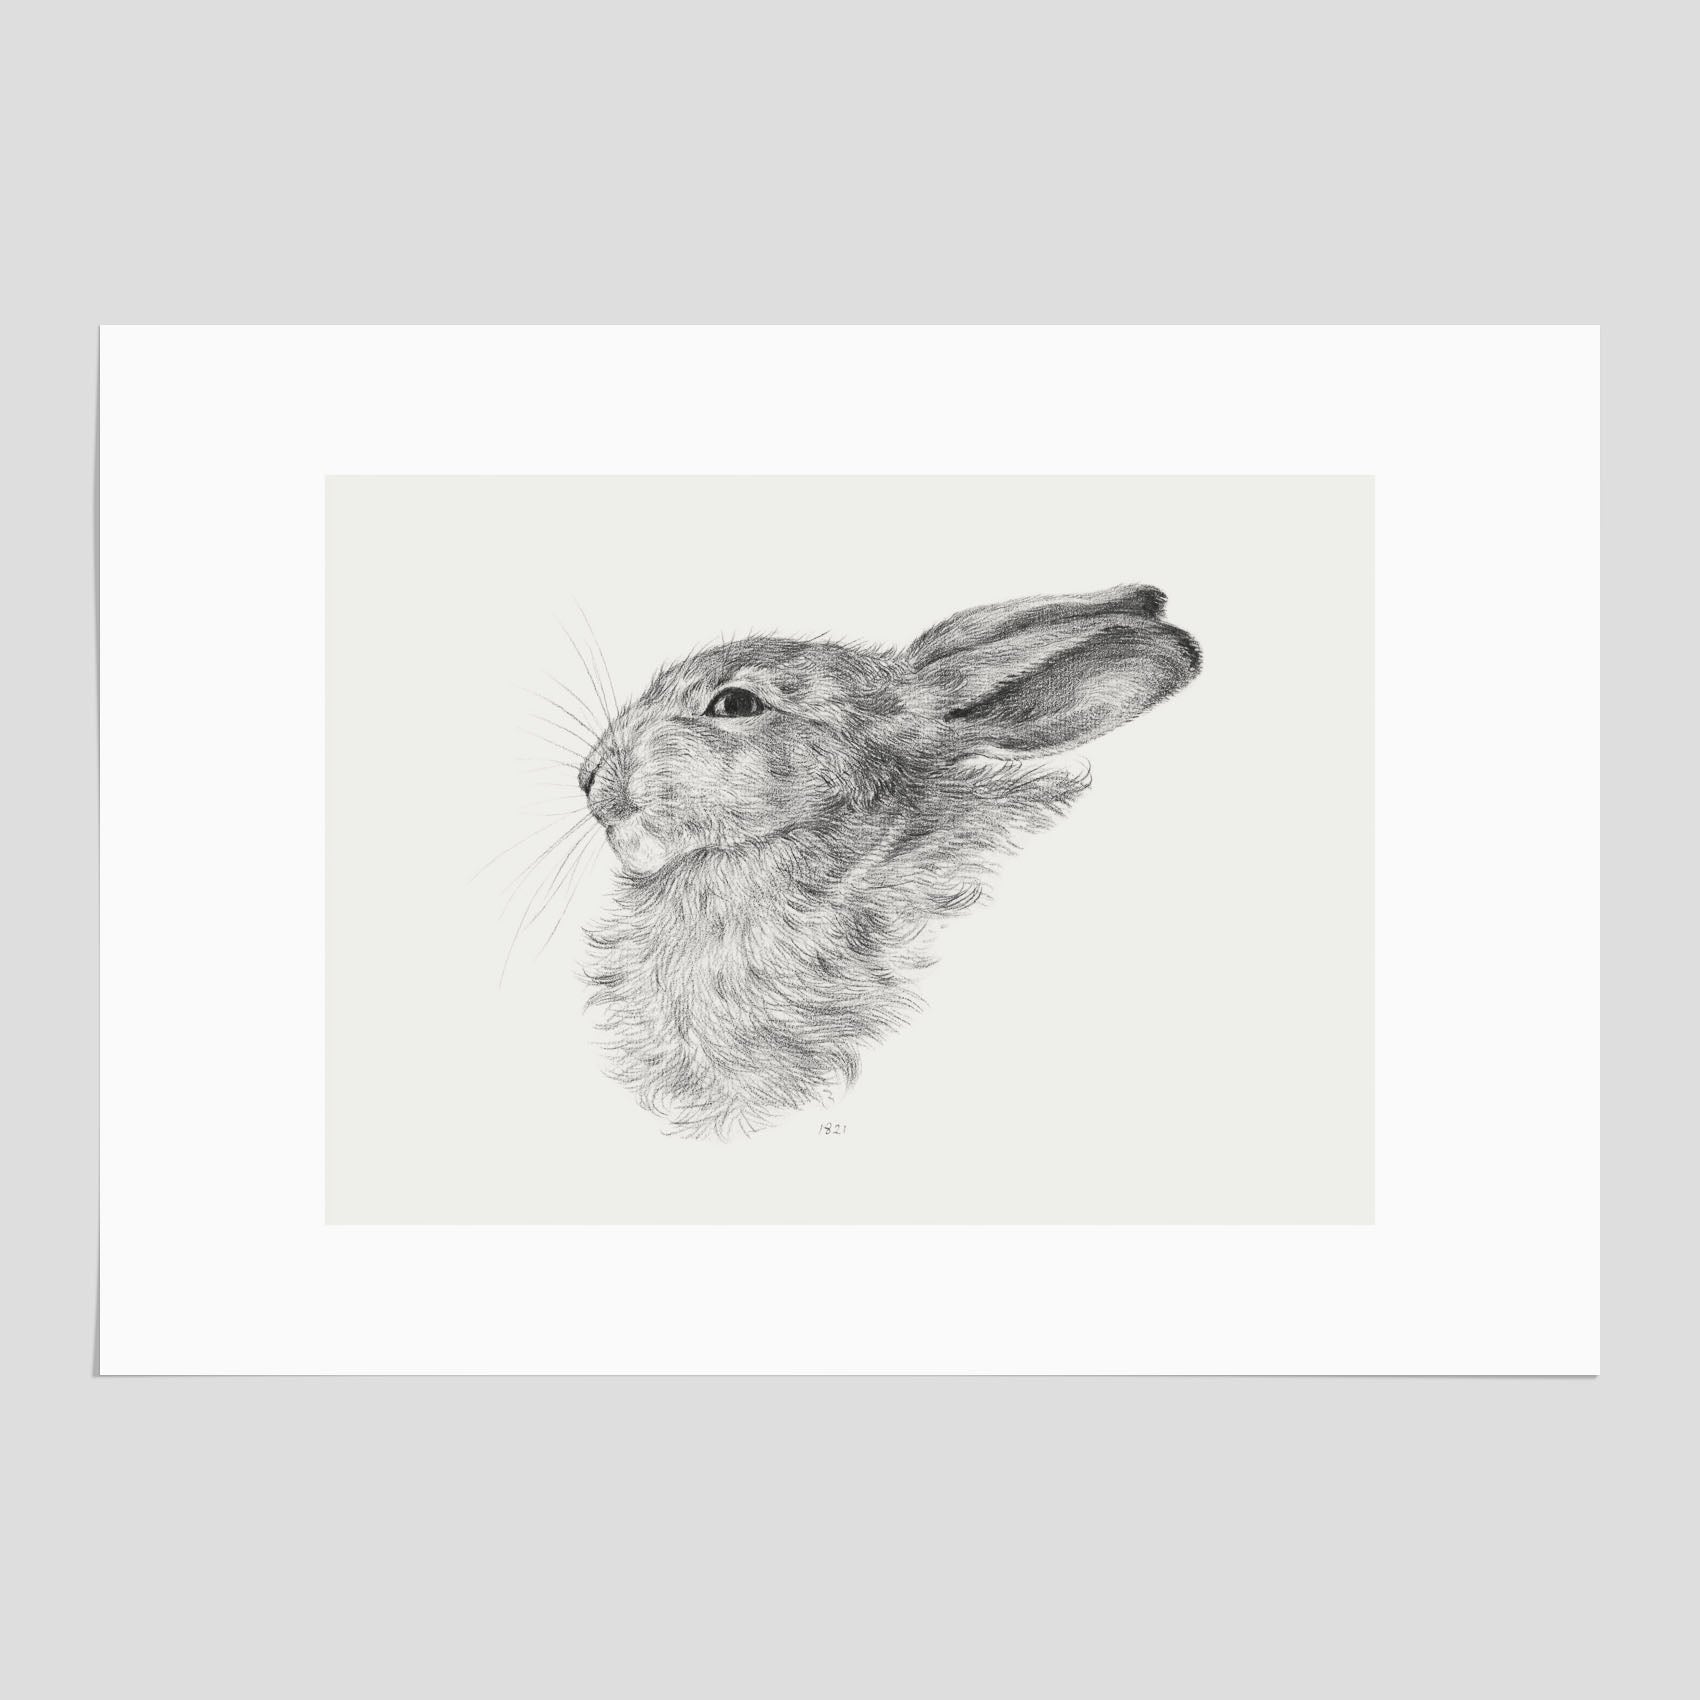 Vintageposter som föreställer en svartvit illustration av en kanin